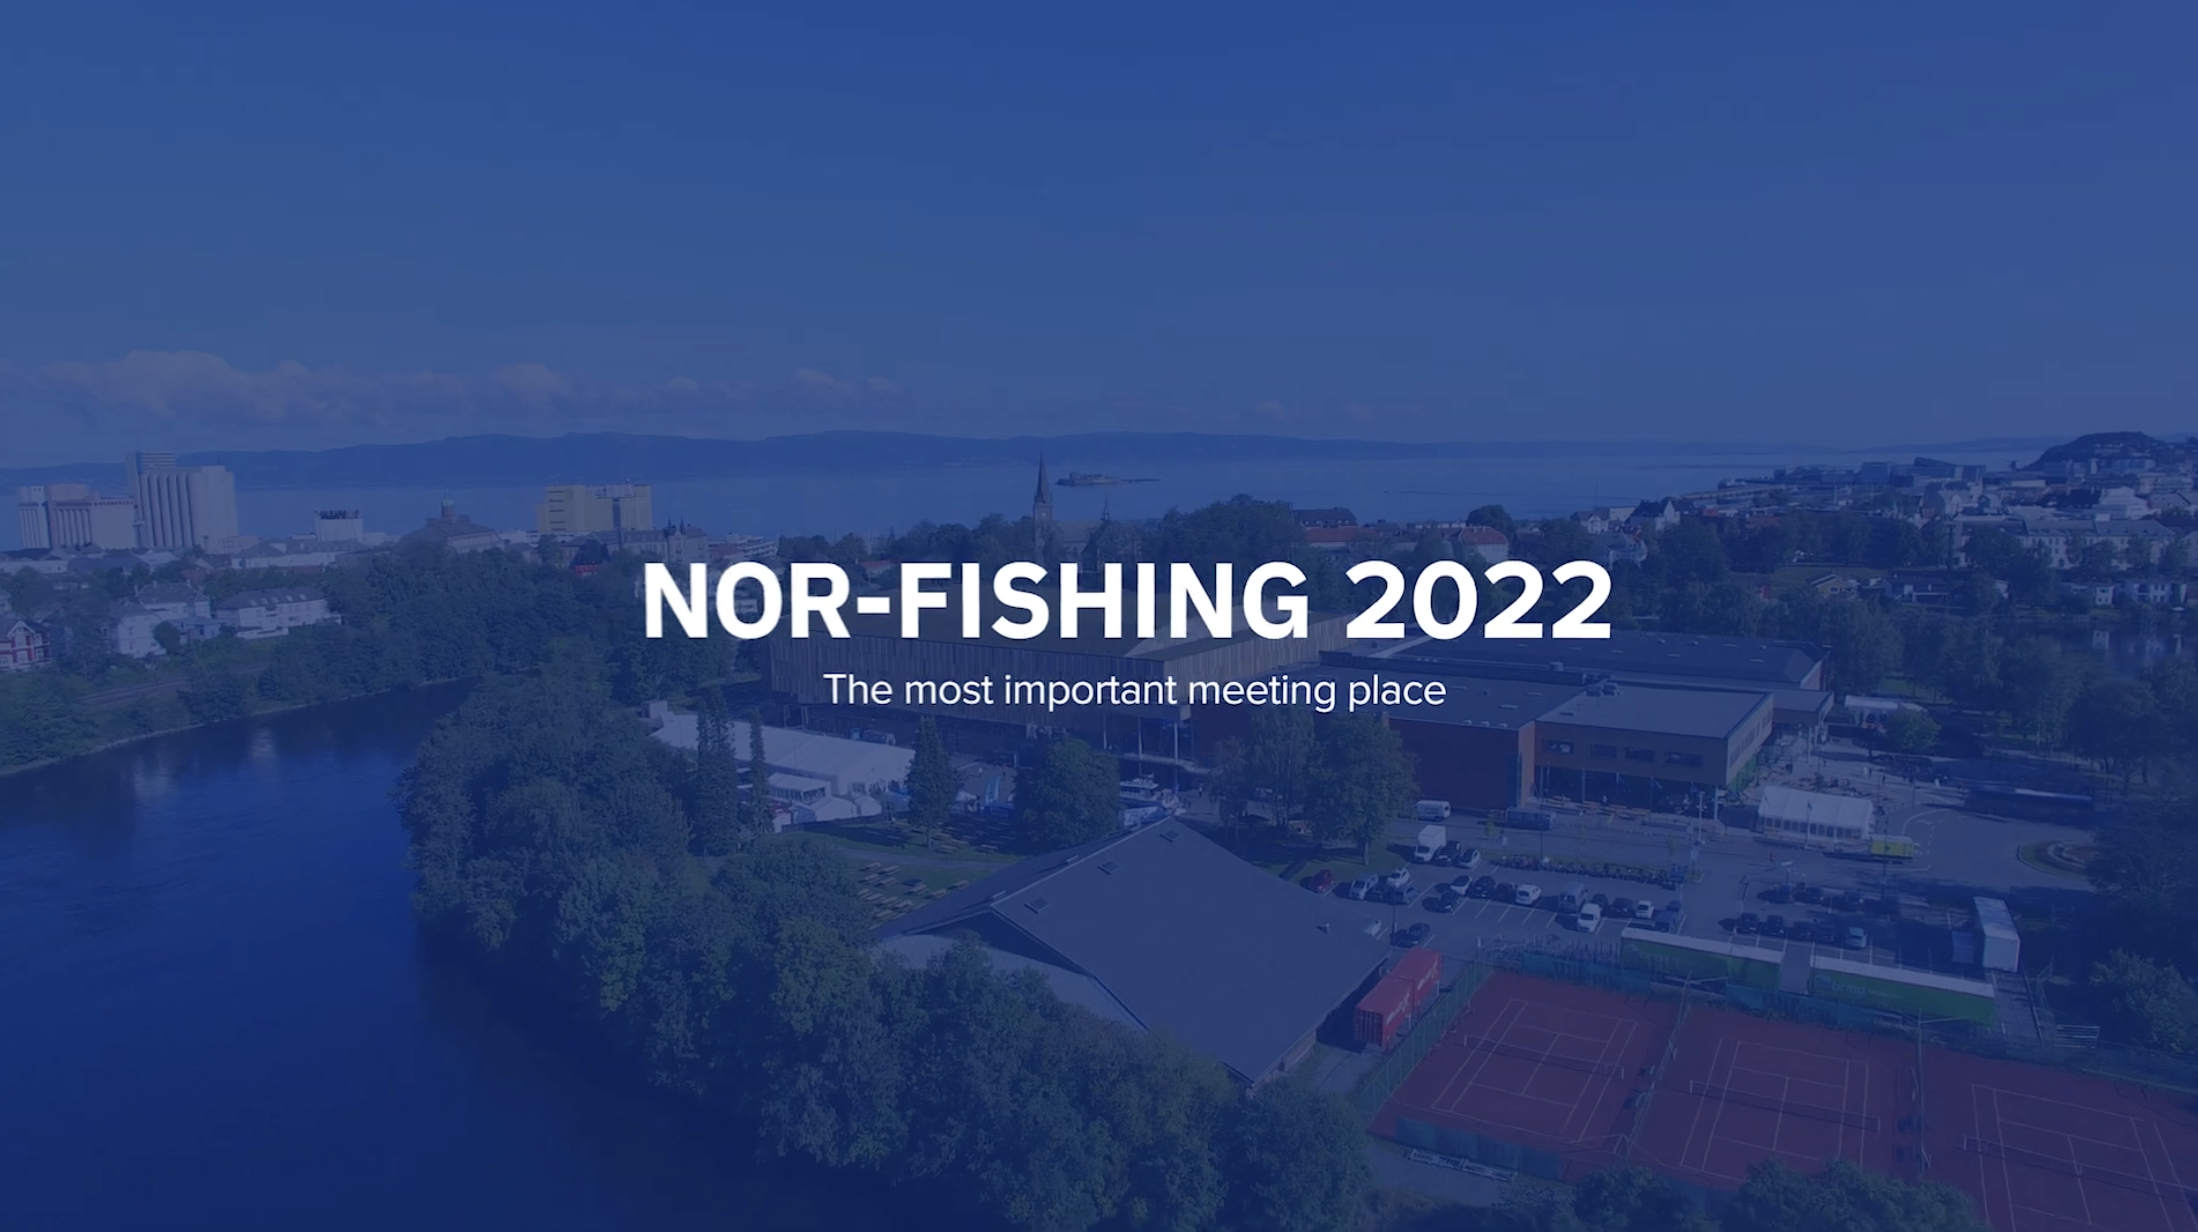 Kom innom vår FIAS-paviljong på Nor Fishing 2022